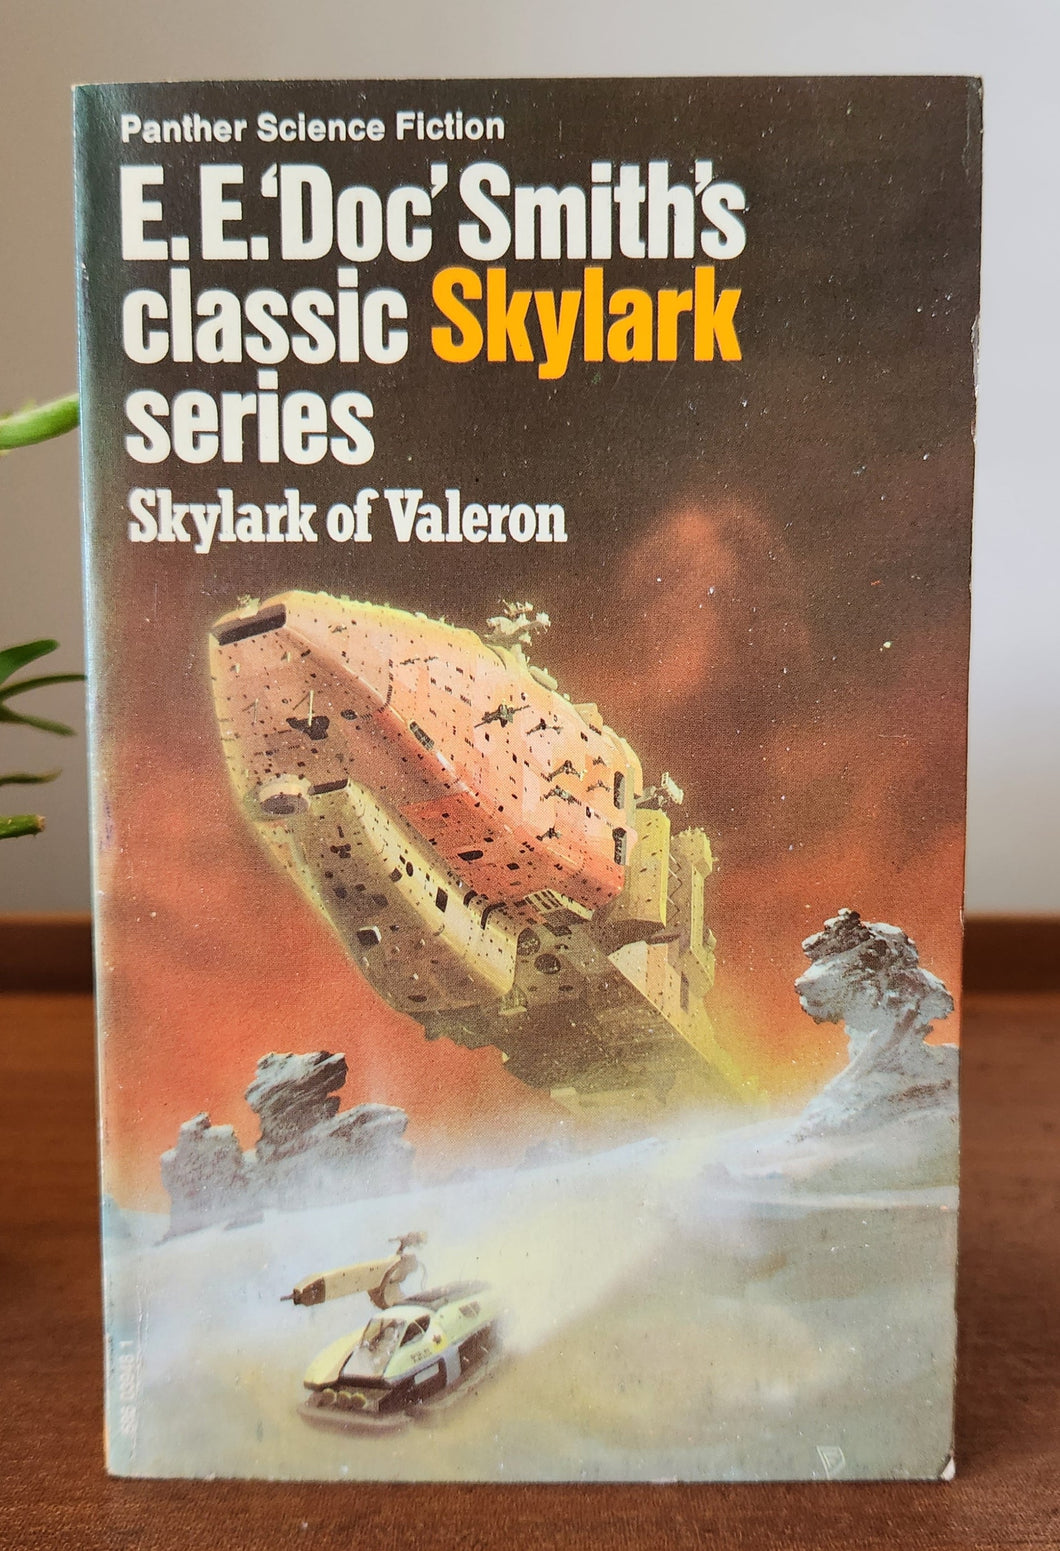 Skylark of Valeron by E.E. 'Doc' Smith